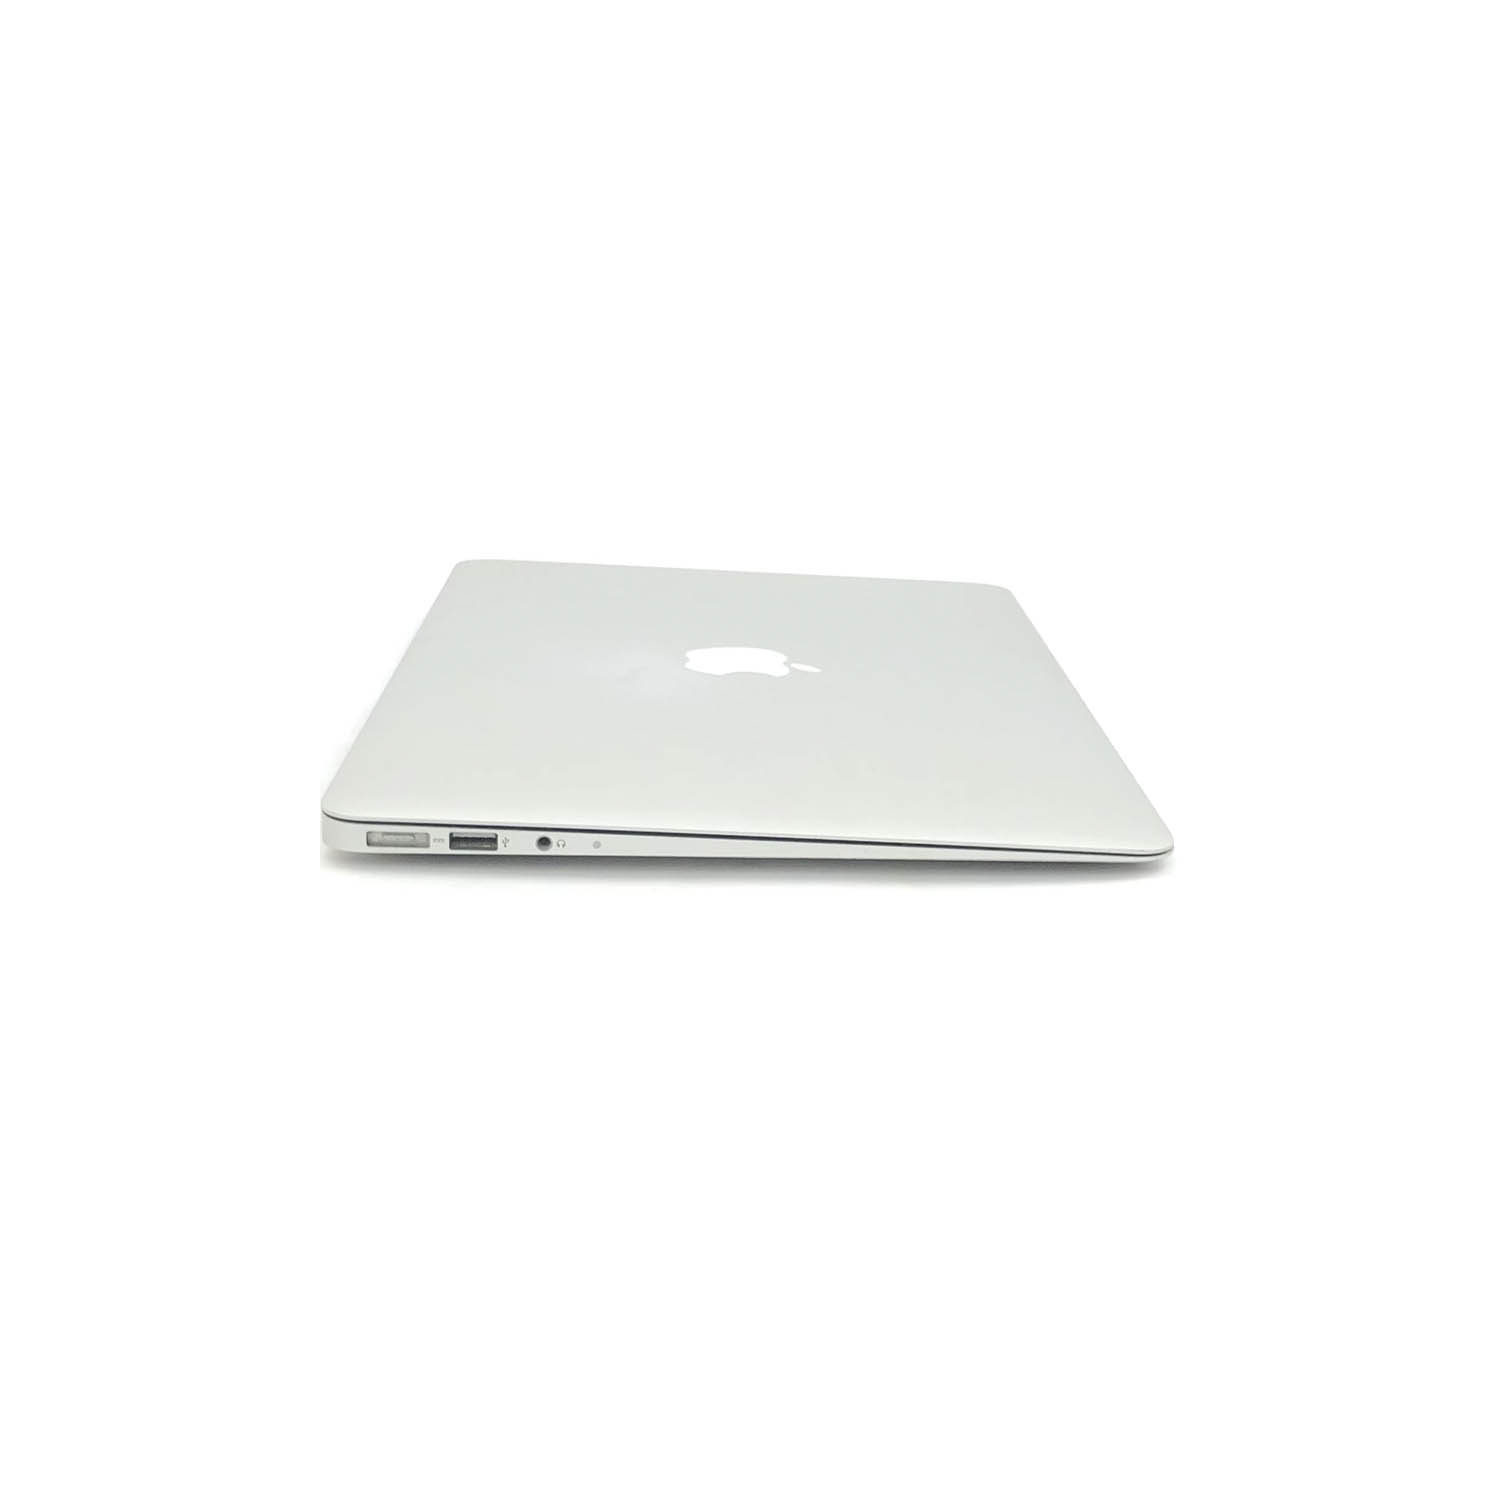 Macbook Air 13 i5 1.8Ghz 4GB 256GB SSD MD231LL/A  Seminovo